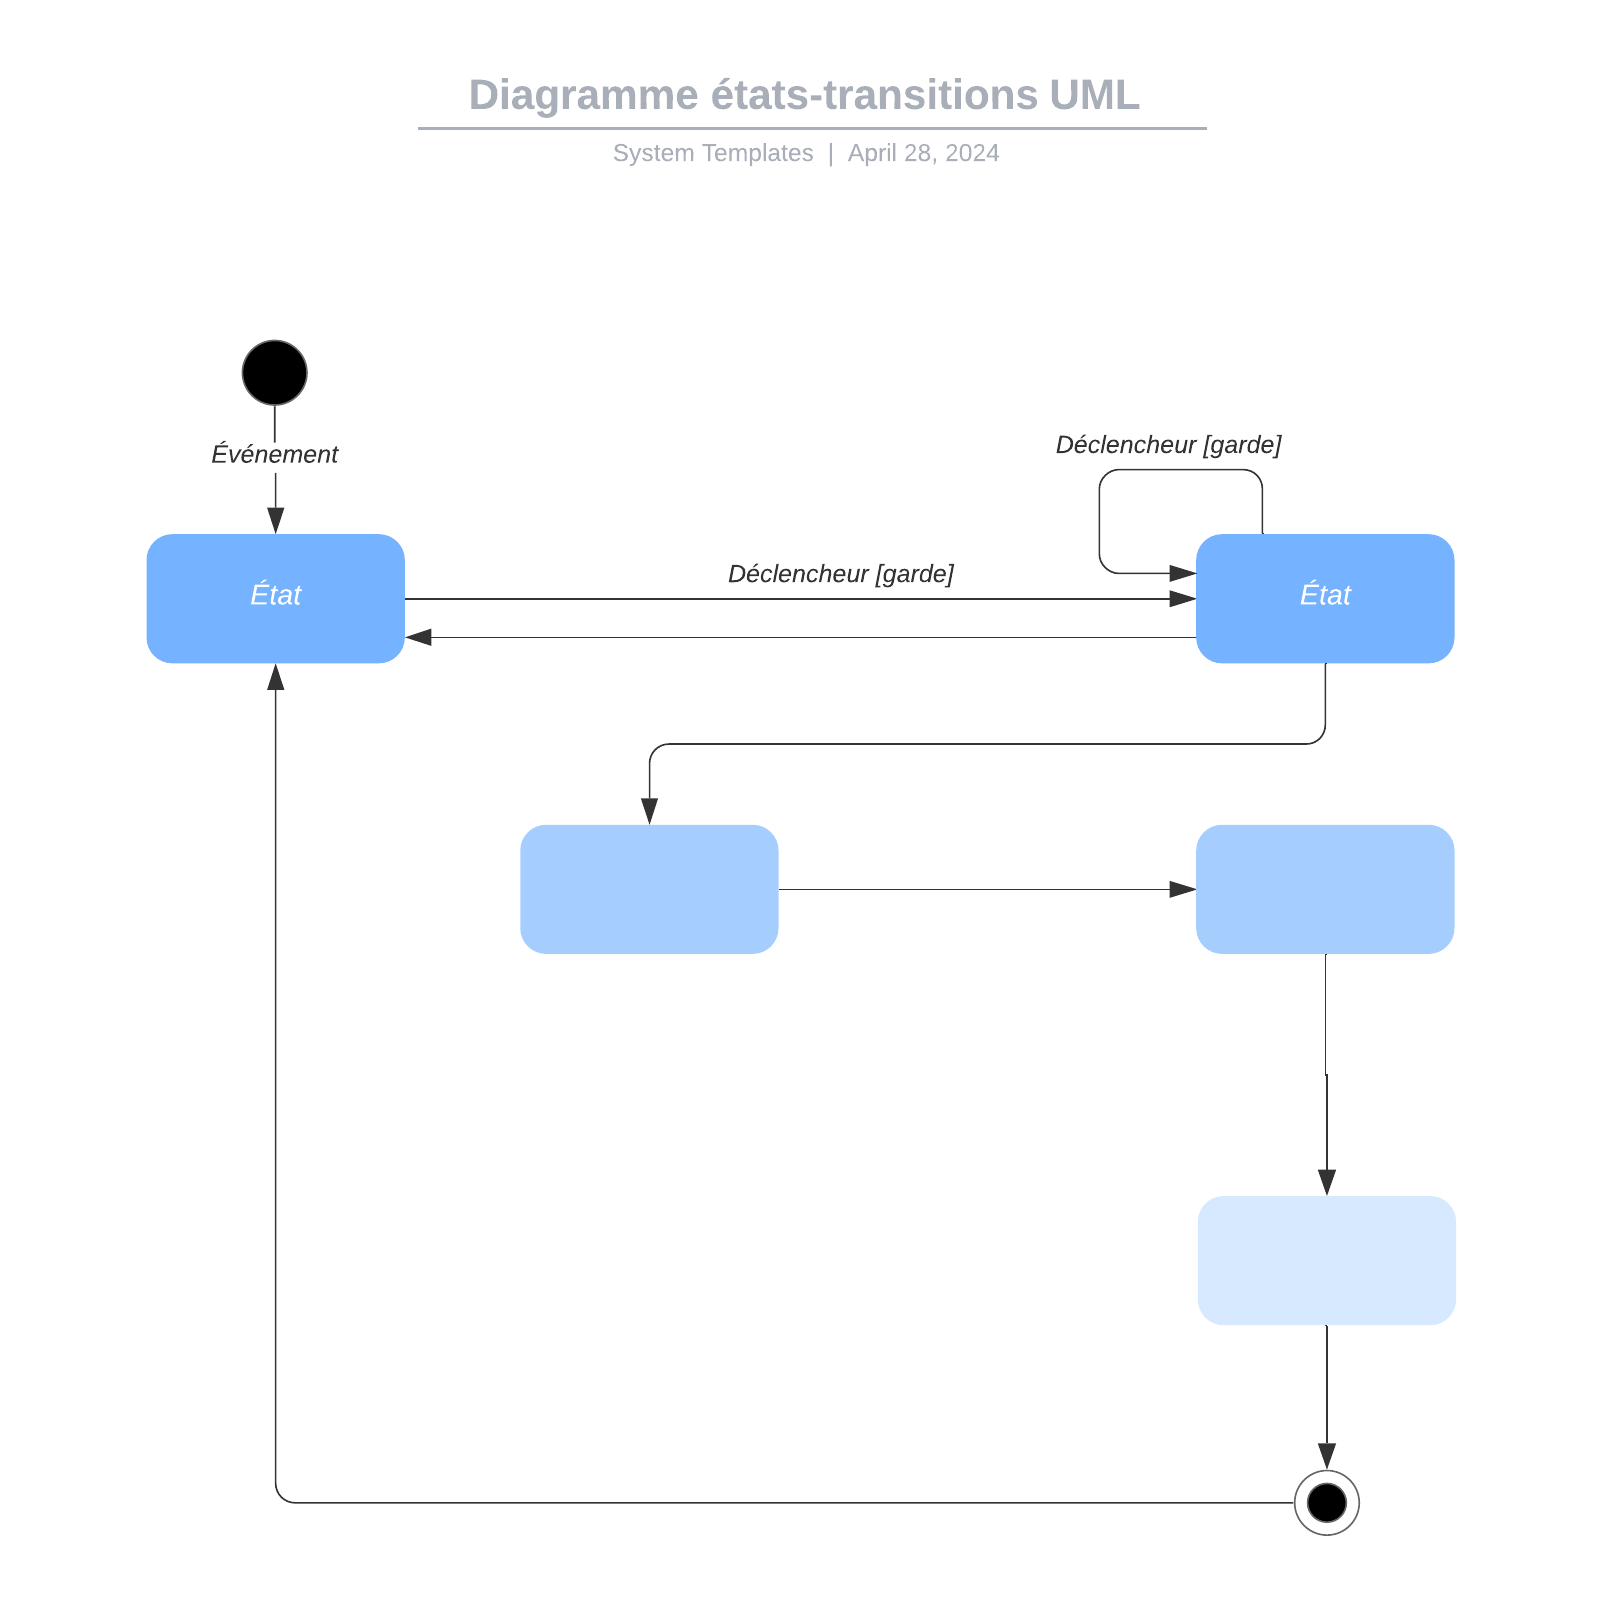 exemple de diagramme états-transitions UML vierge